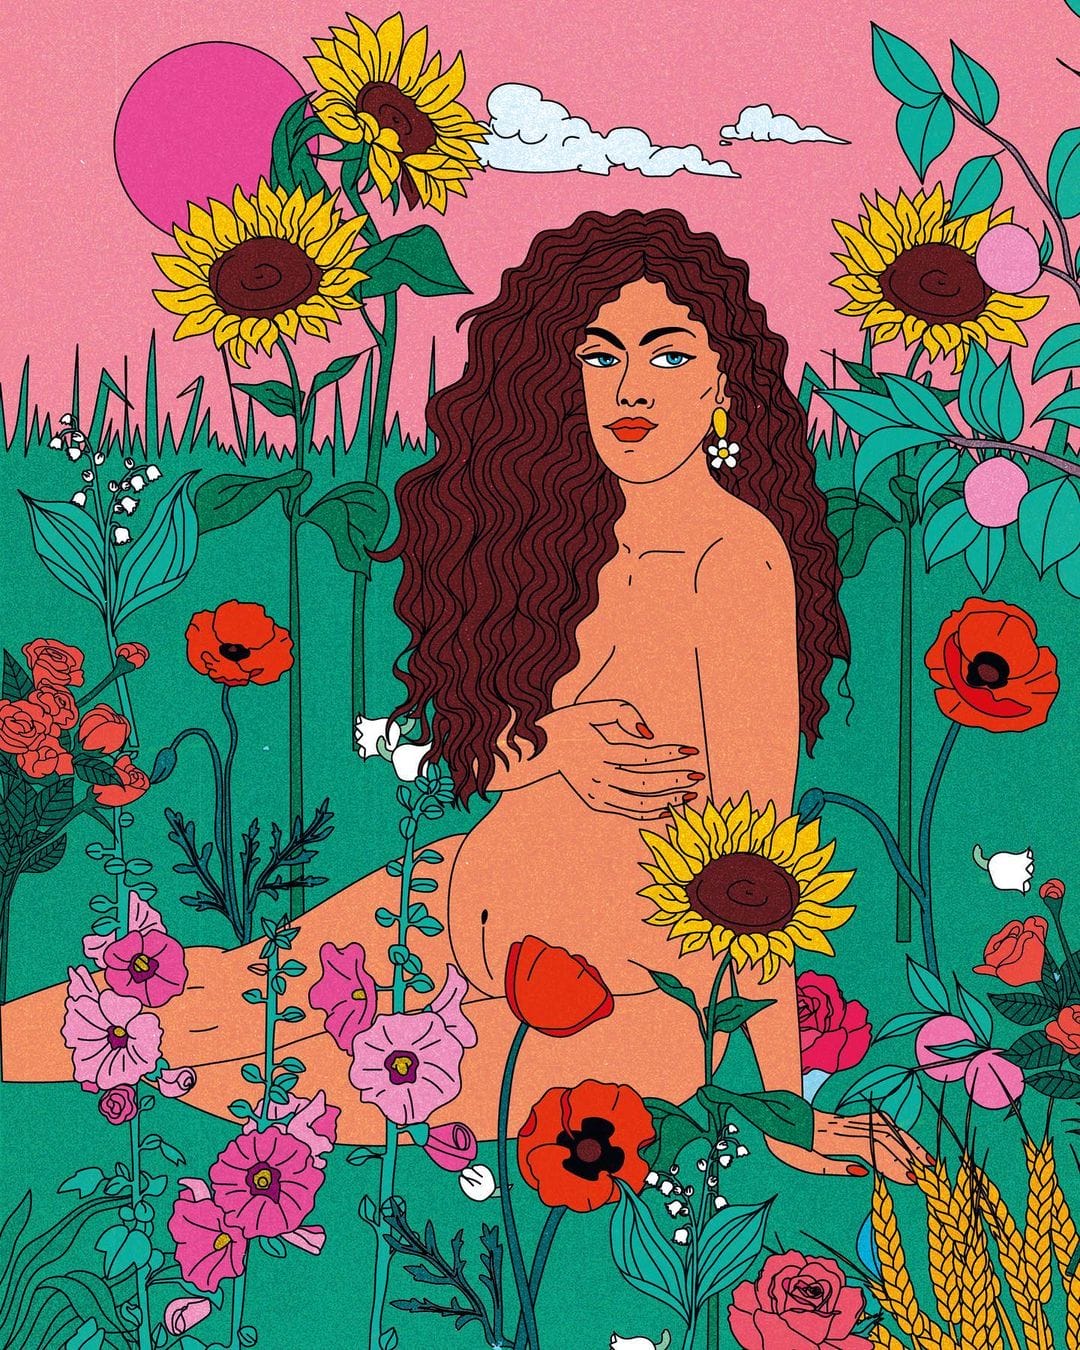 "Blooming" est une illustration pop et colorée dont seul Cosmo a le secret